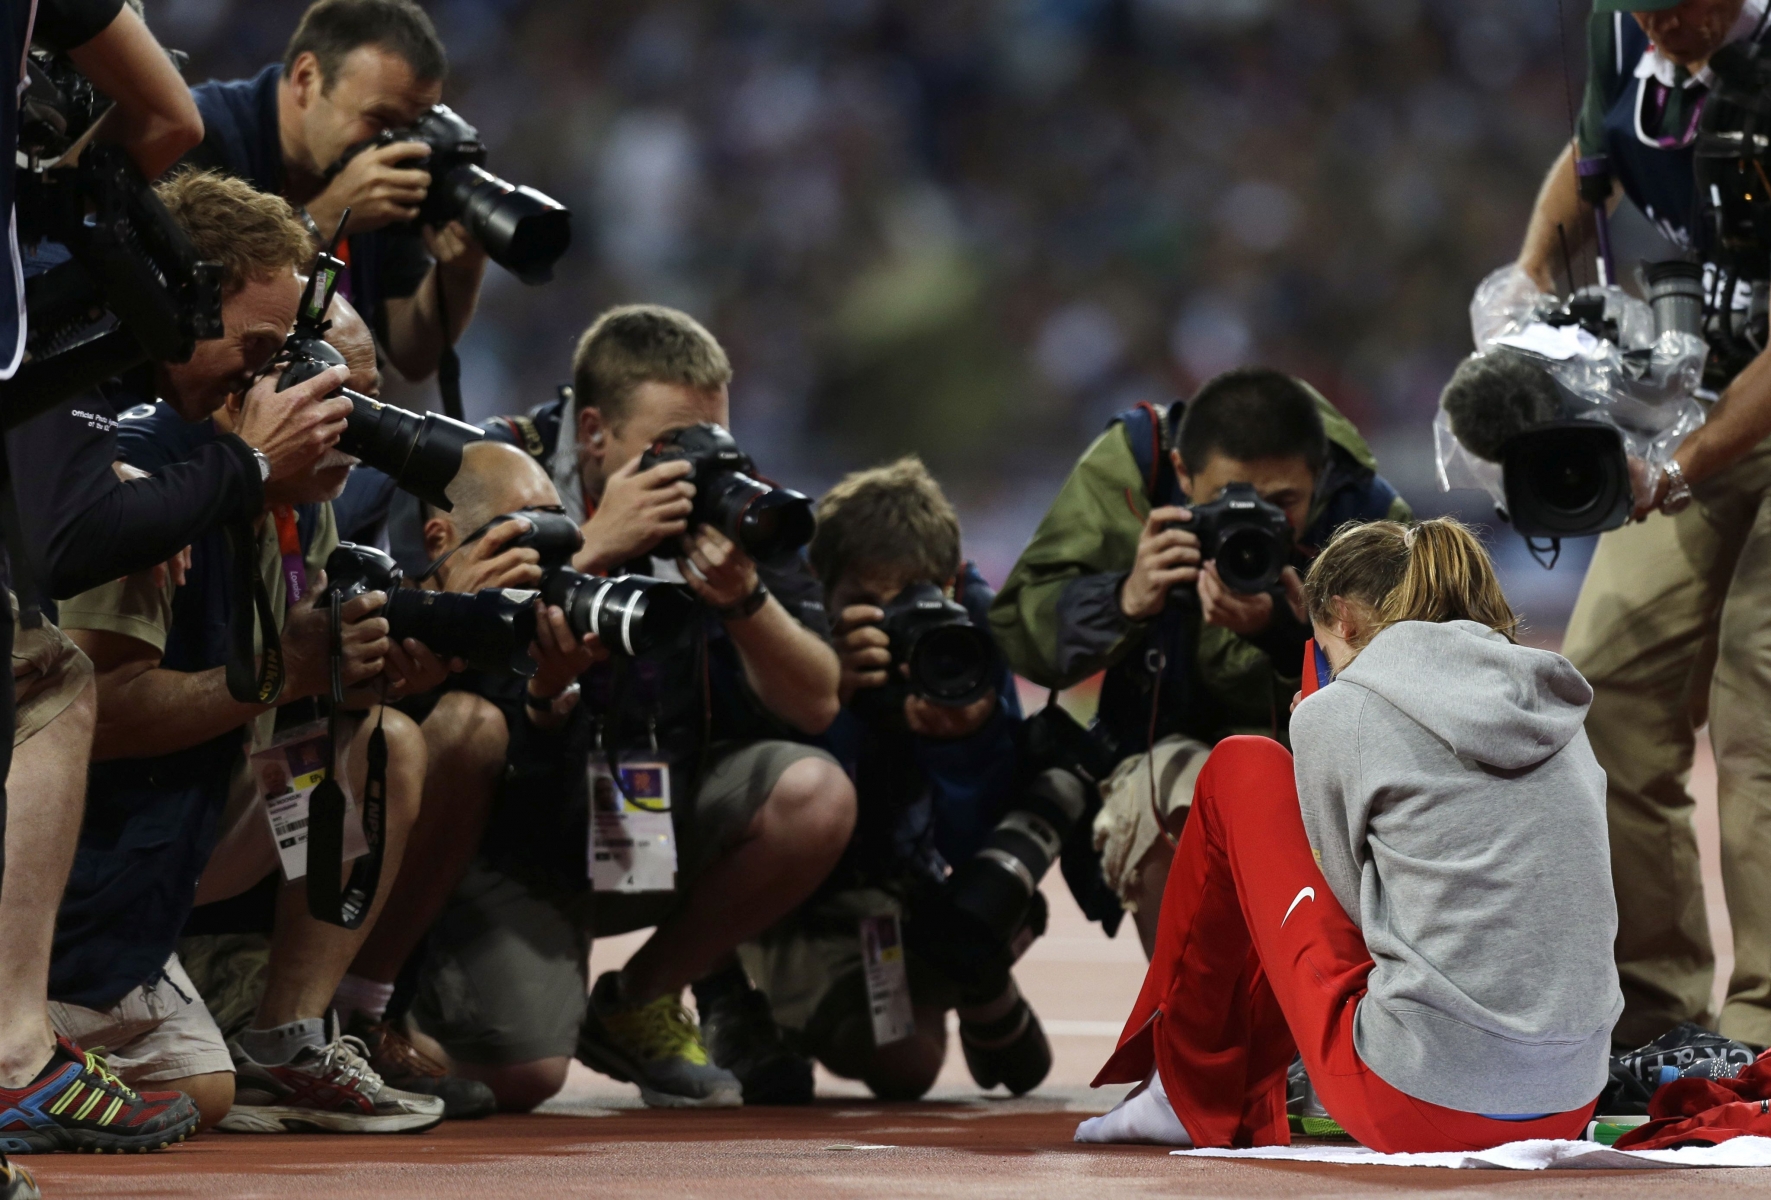 Caméras et appareils photos sont de plus en plus intrusifs pour les athlètes.